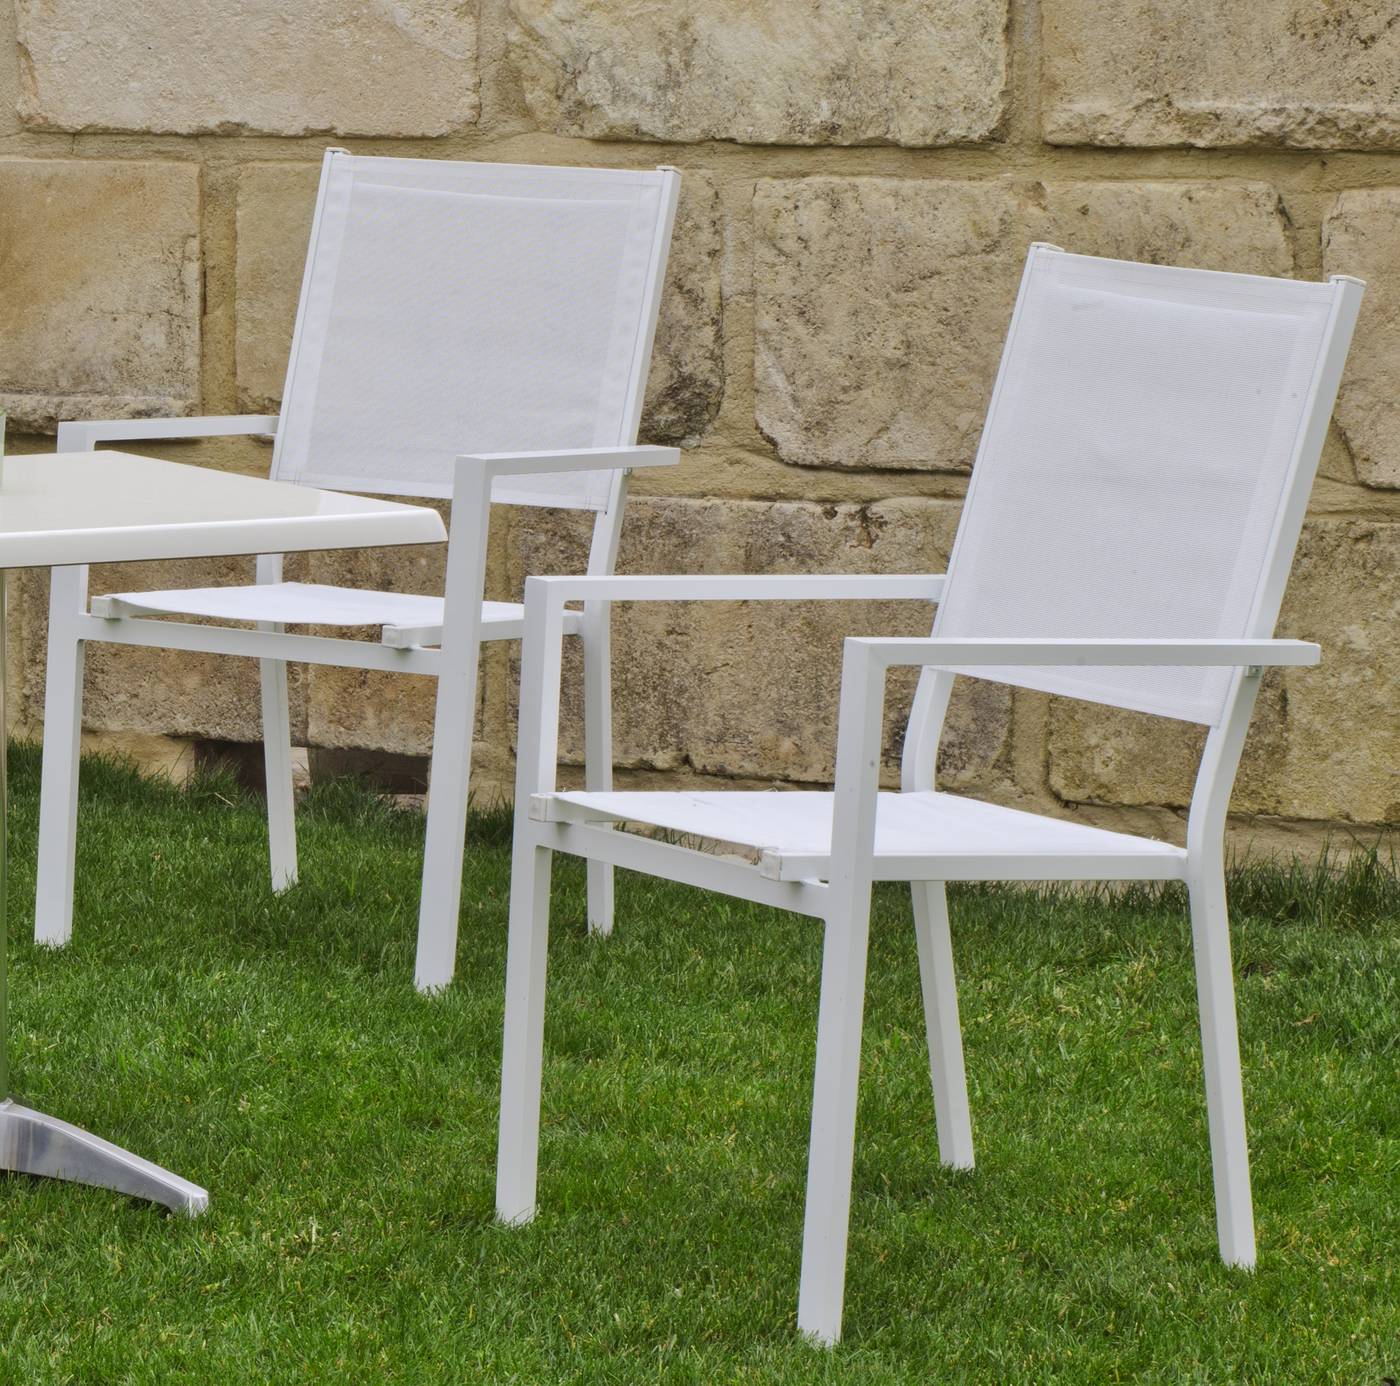 Set Aluminio Arian-Sion 120-6 - Conjunto aluminio color blanco: mesa rectangular plegable de 120 cm. con tablero de heverzaplus + 6 sillas de aluminio y textilen